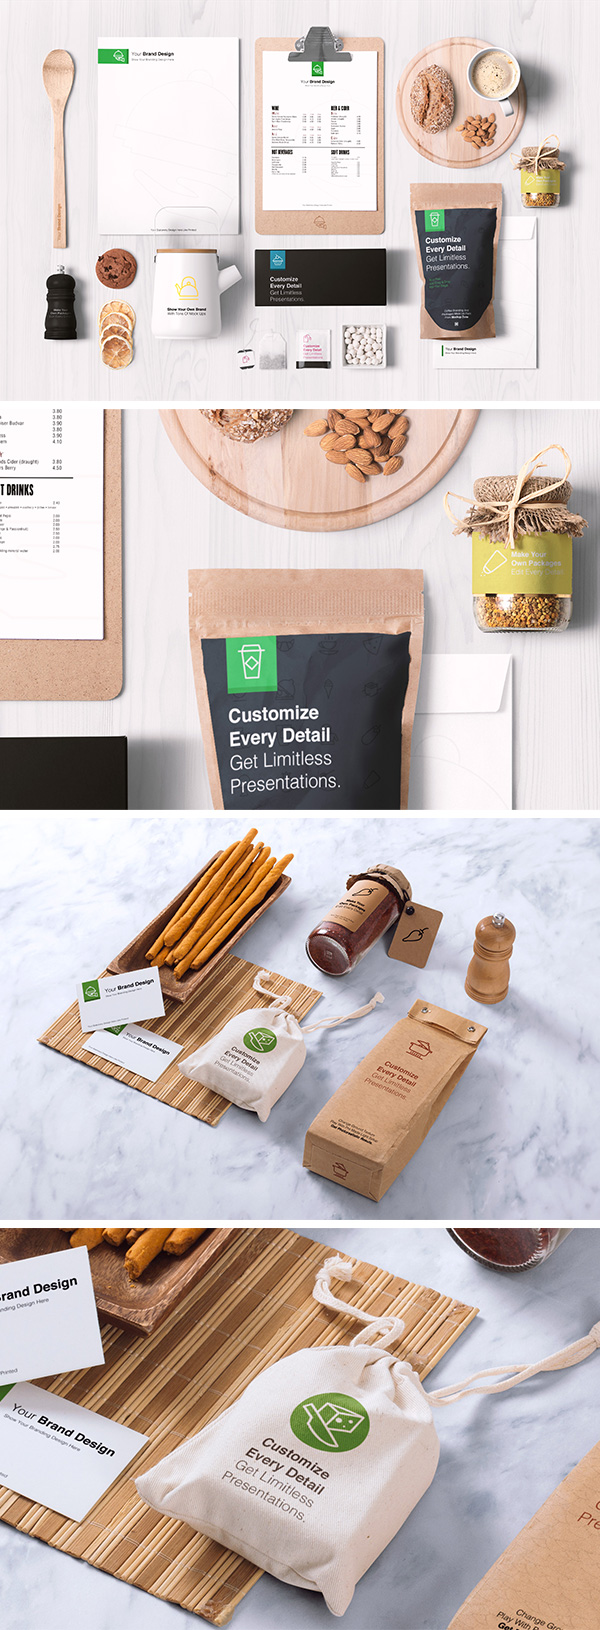 2 Food Branding, Eco Packaging MockUps